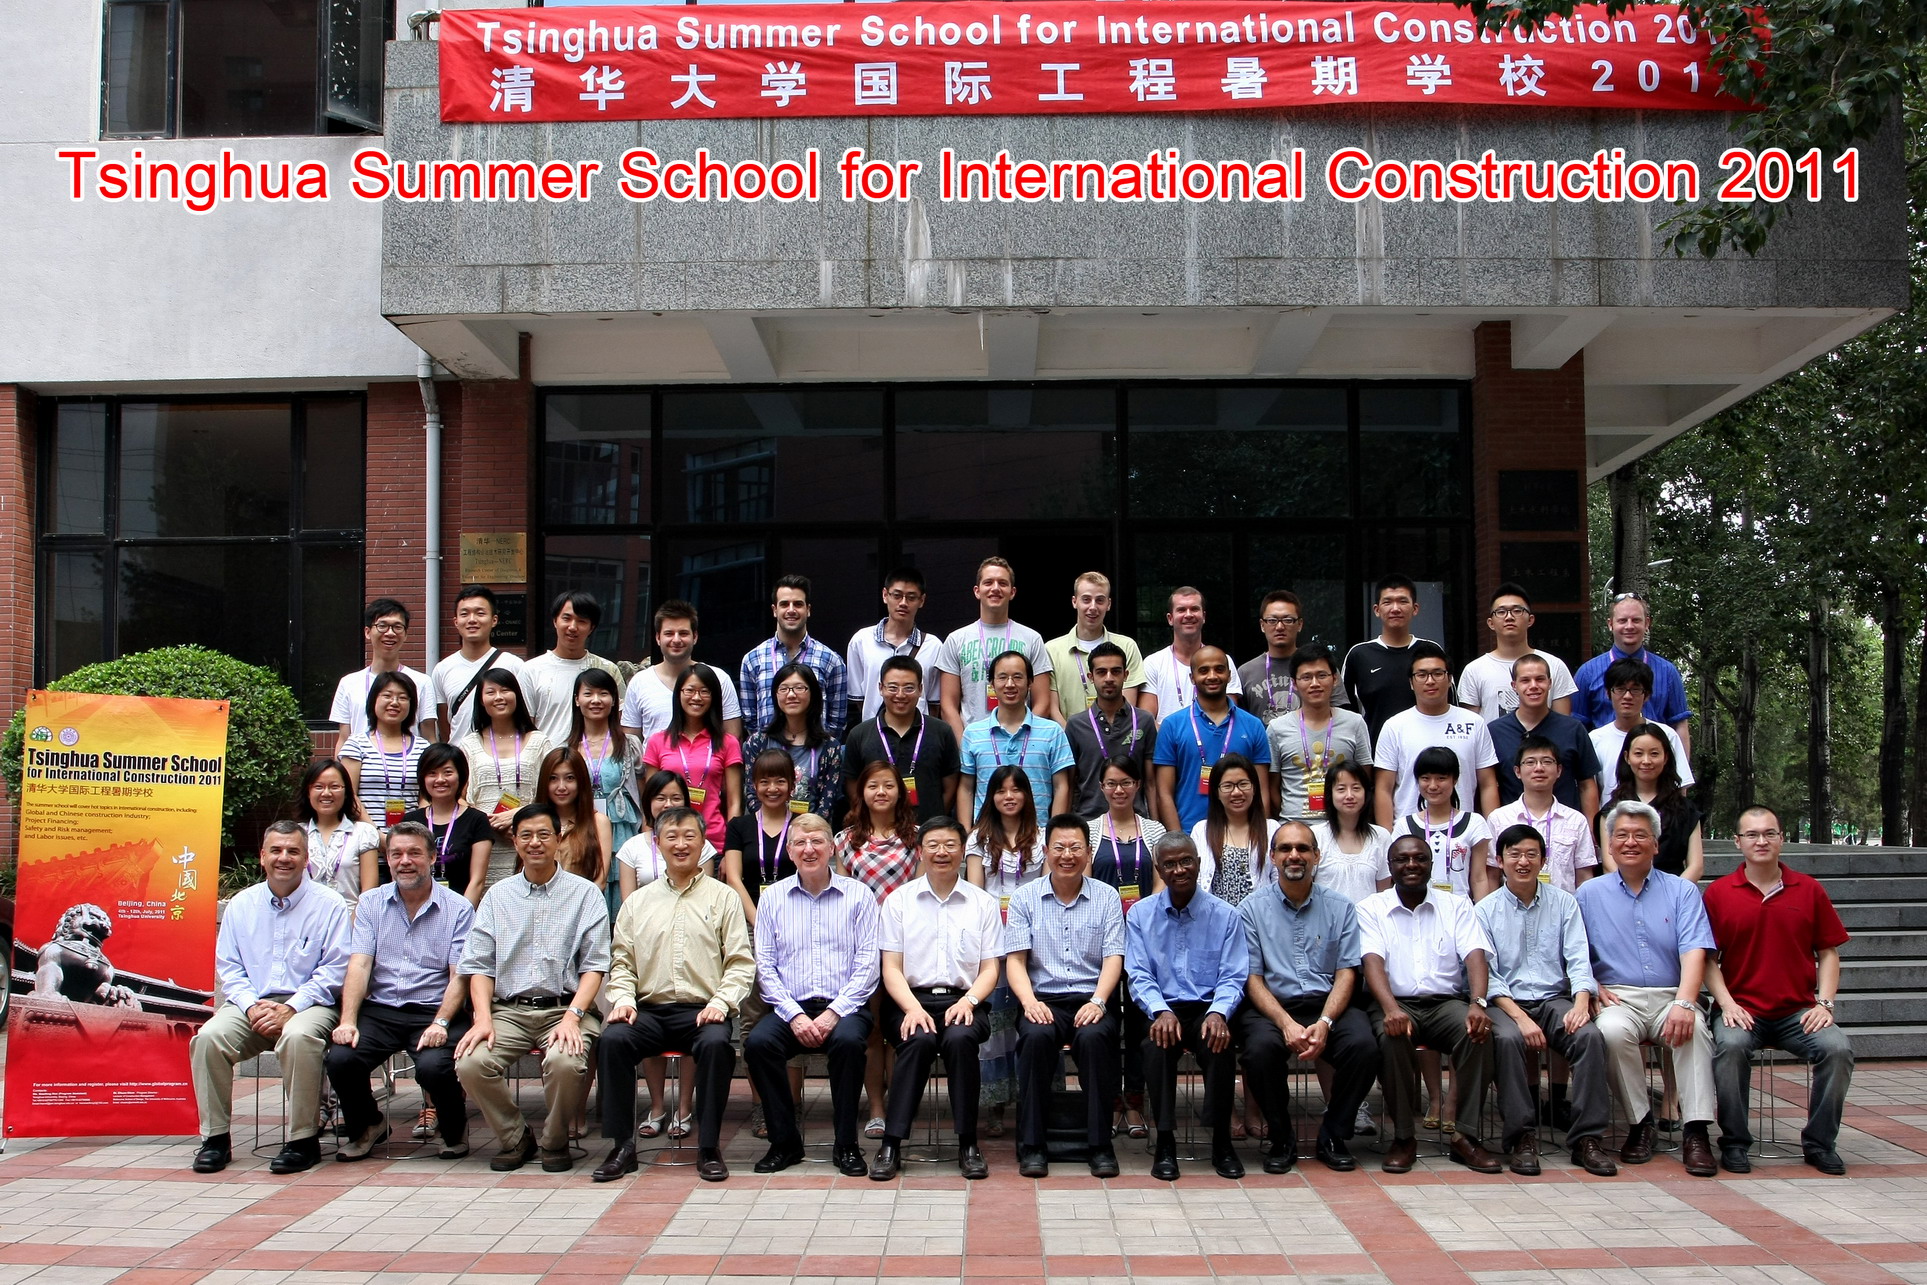 Tsinghua Summer School for International Construction 2011